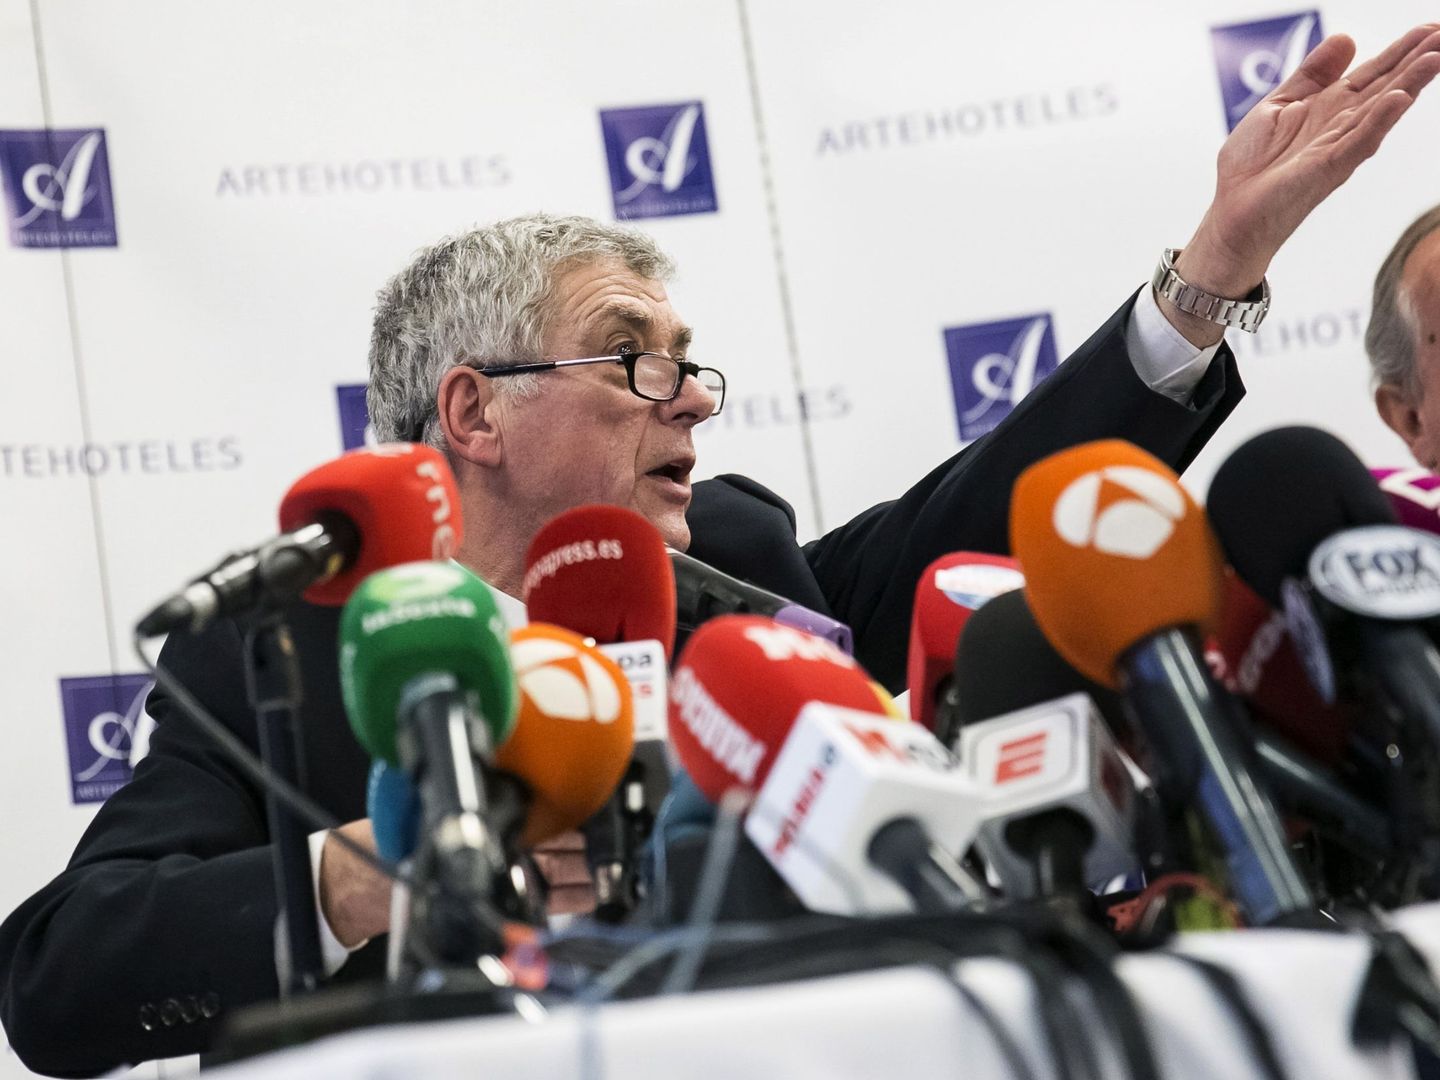 Villar gesticuló constantemente durante la rueda de prensa. (EFE)